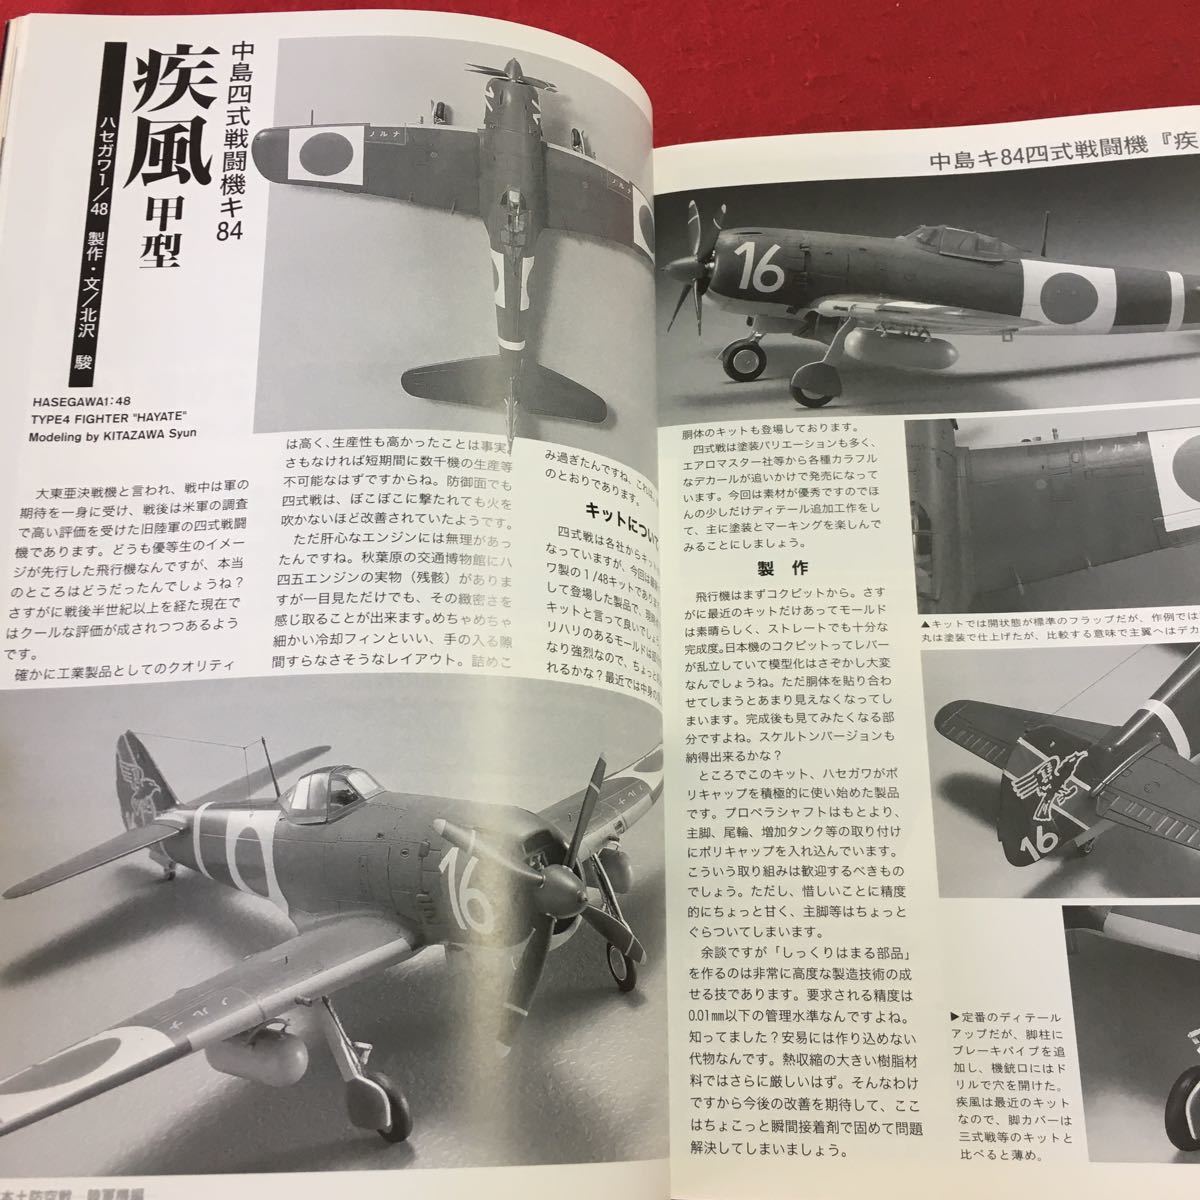 S7i-171 モデルアート 2001年7月号 No.588 平成13年7月1日 発行 モデルアート社 雑誌 戦闘機 飛行機 ミリタリー 模型 プラモデル 趣味 戦車_画像6